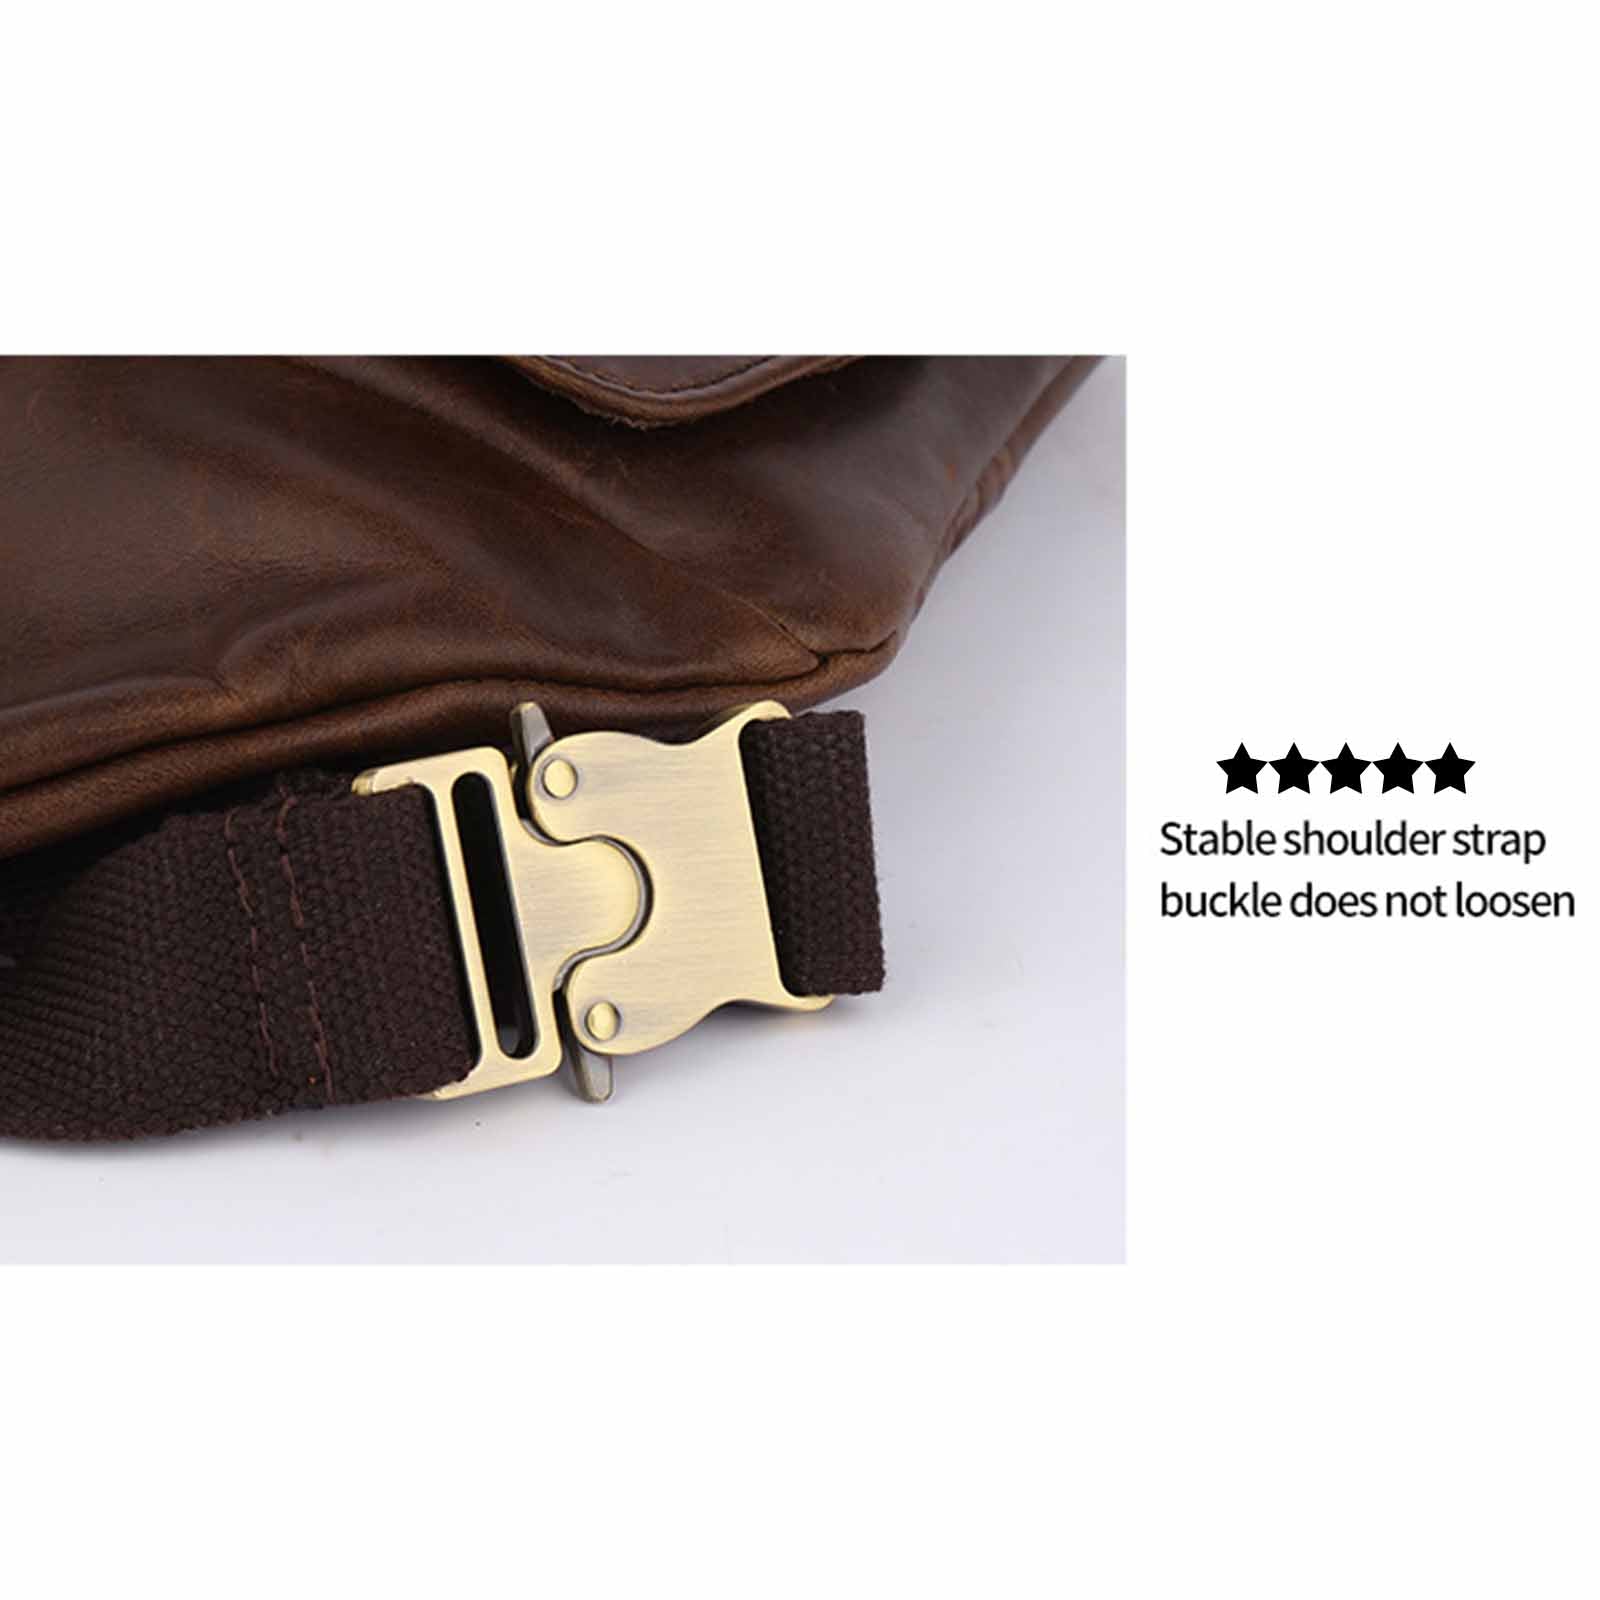 Vintage Leather Belt Bag For Women